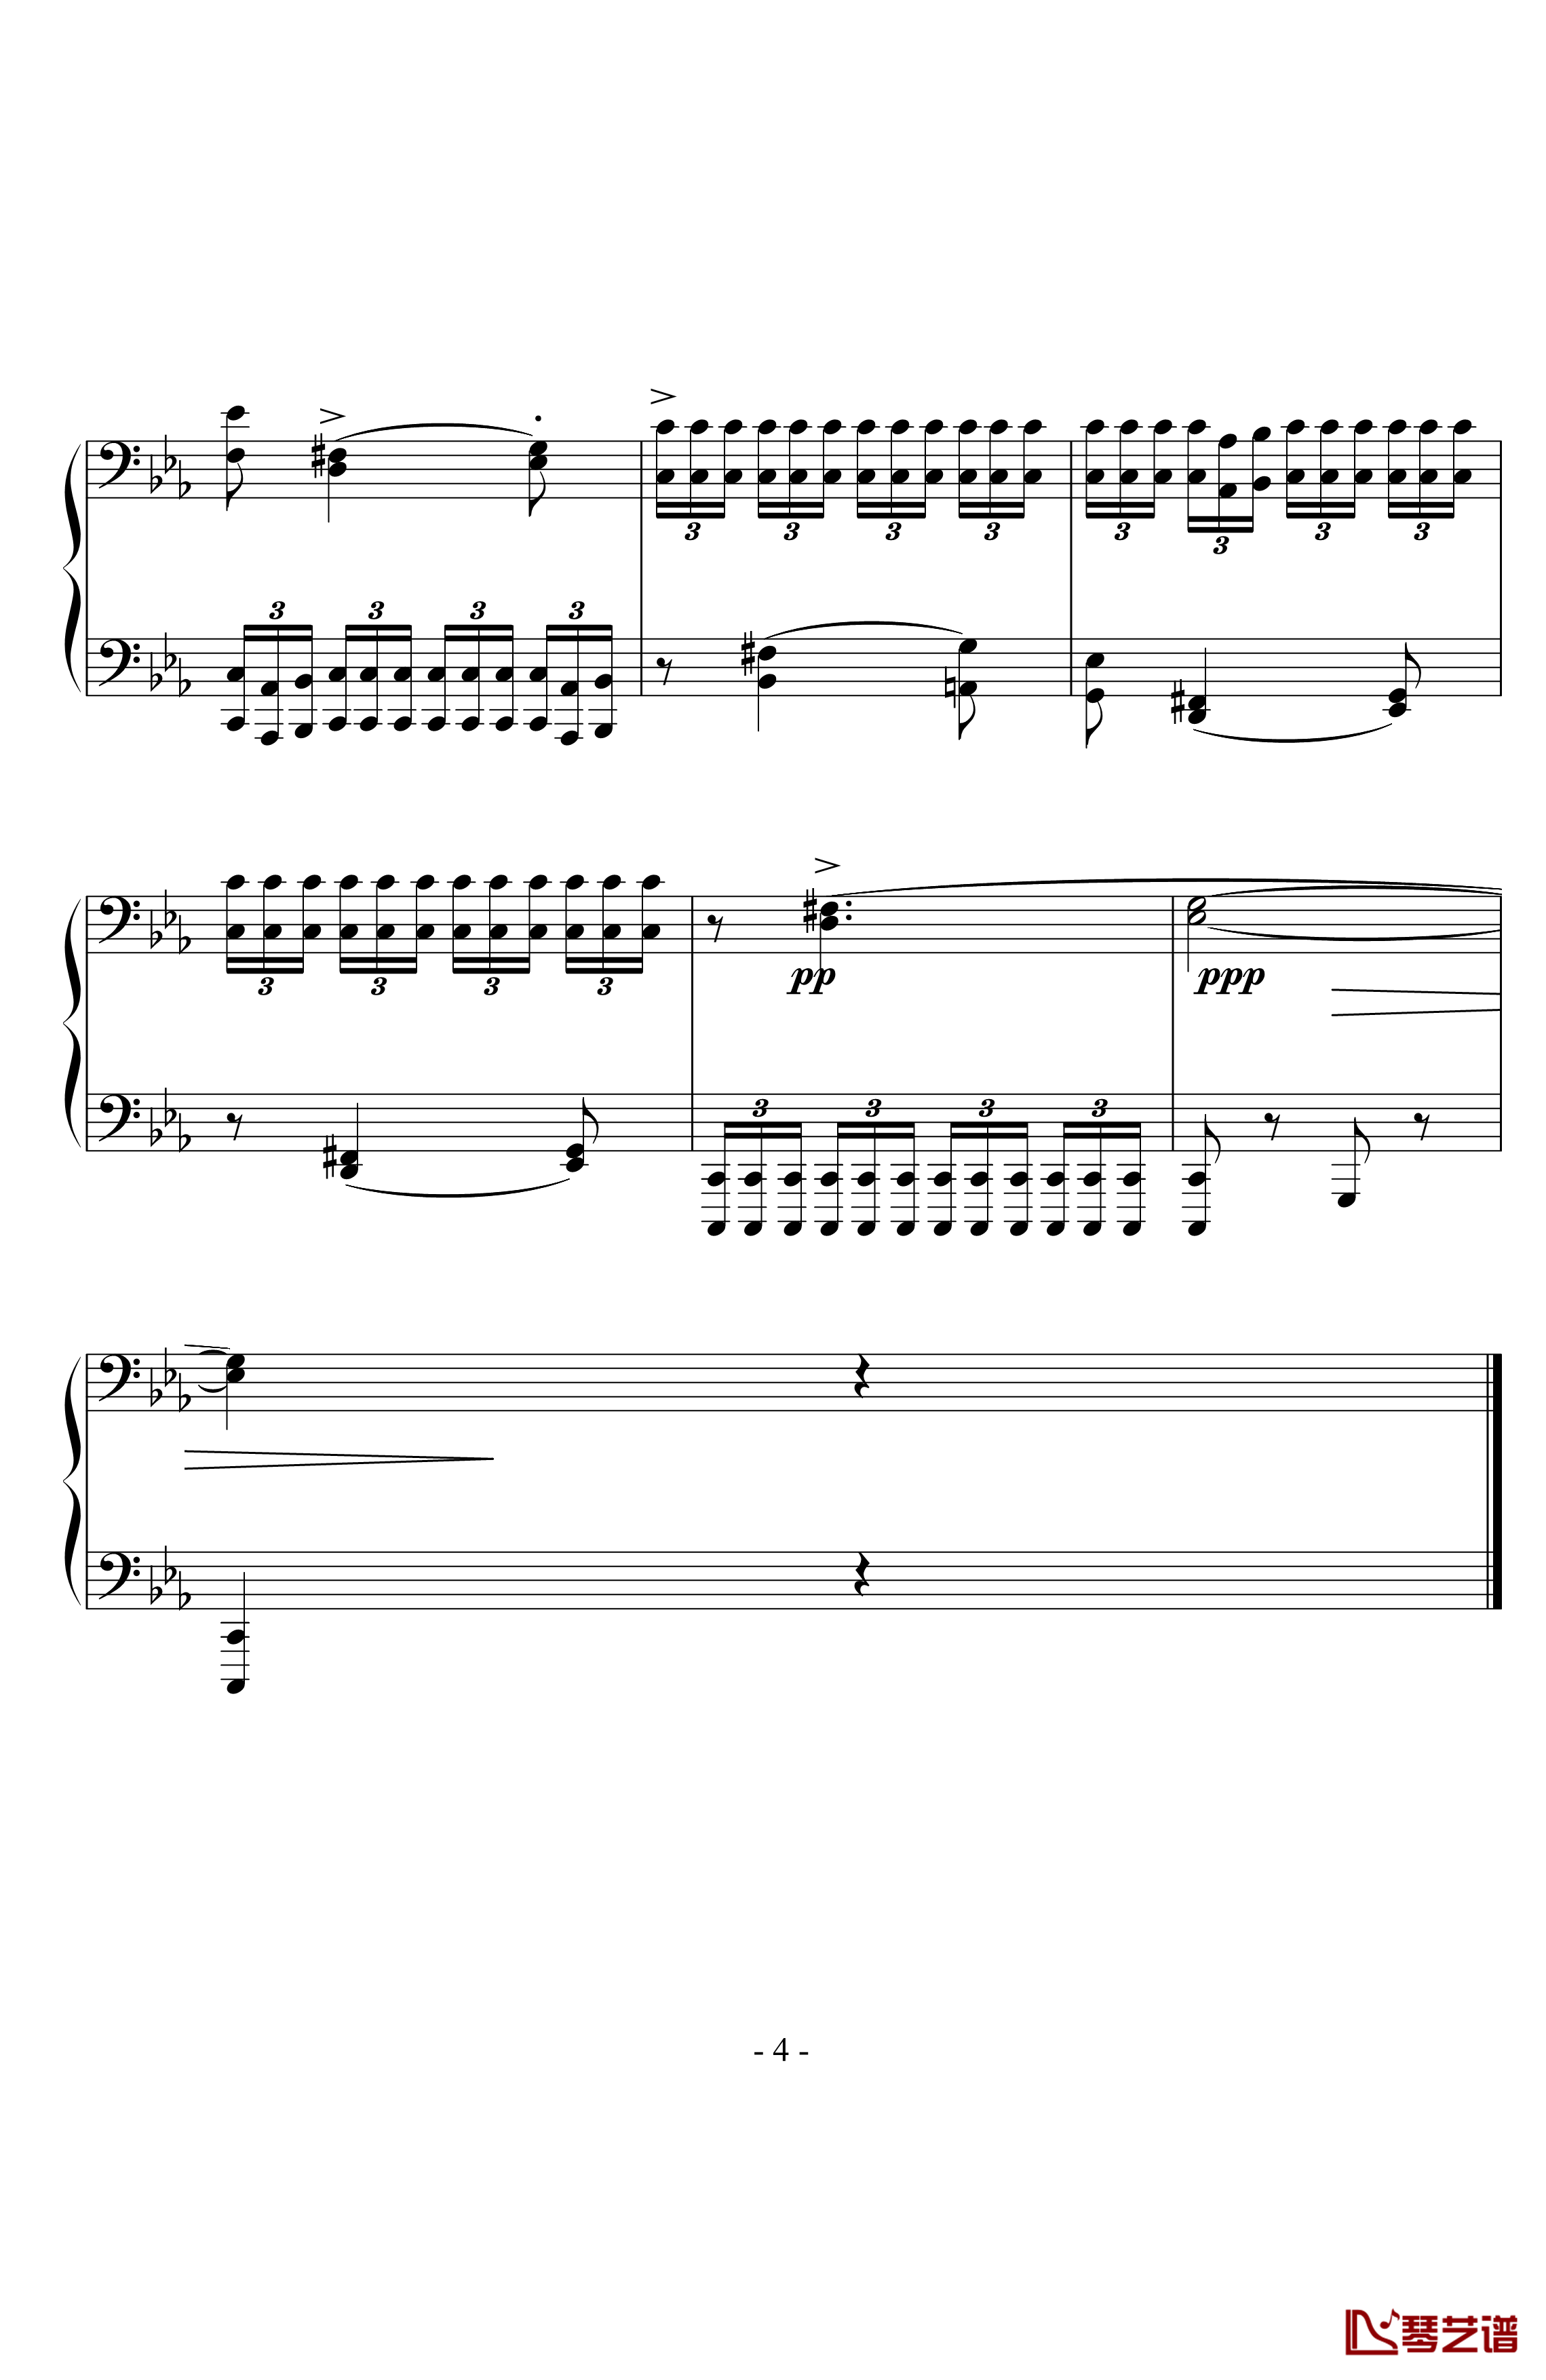 八度练习曲钢琴谱-十级类技巧性练习曲-卡本良斯基4